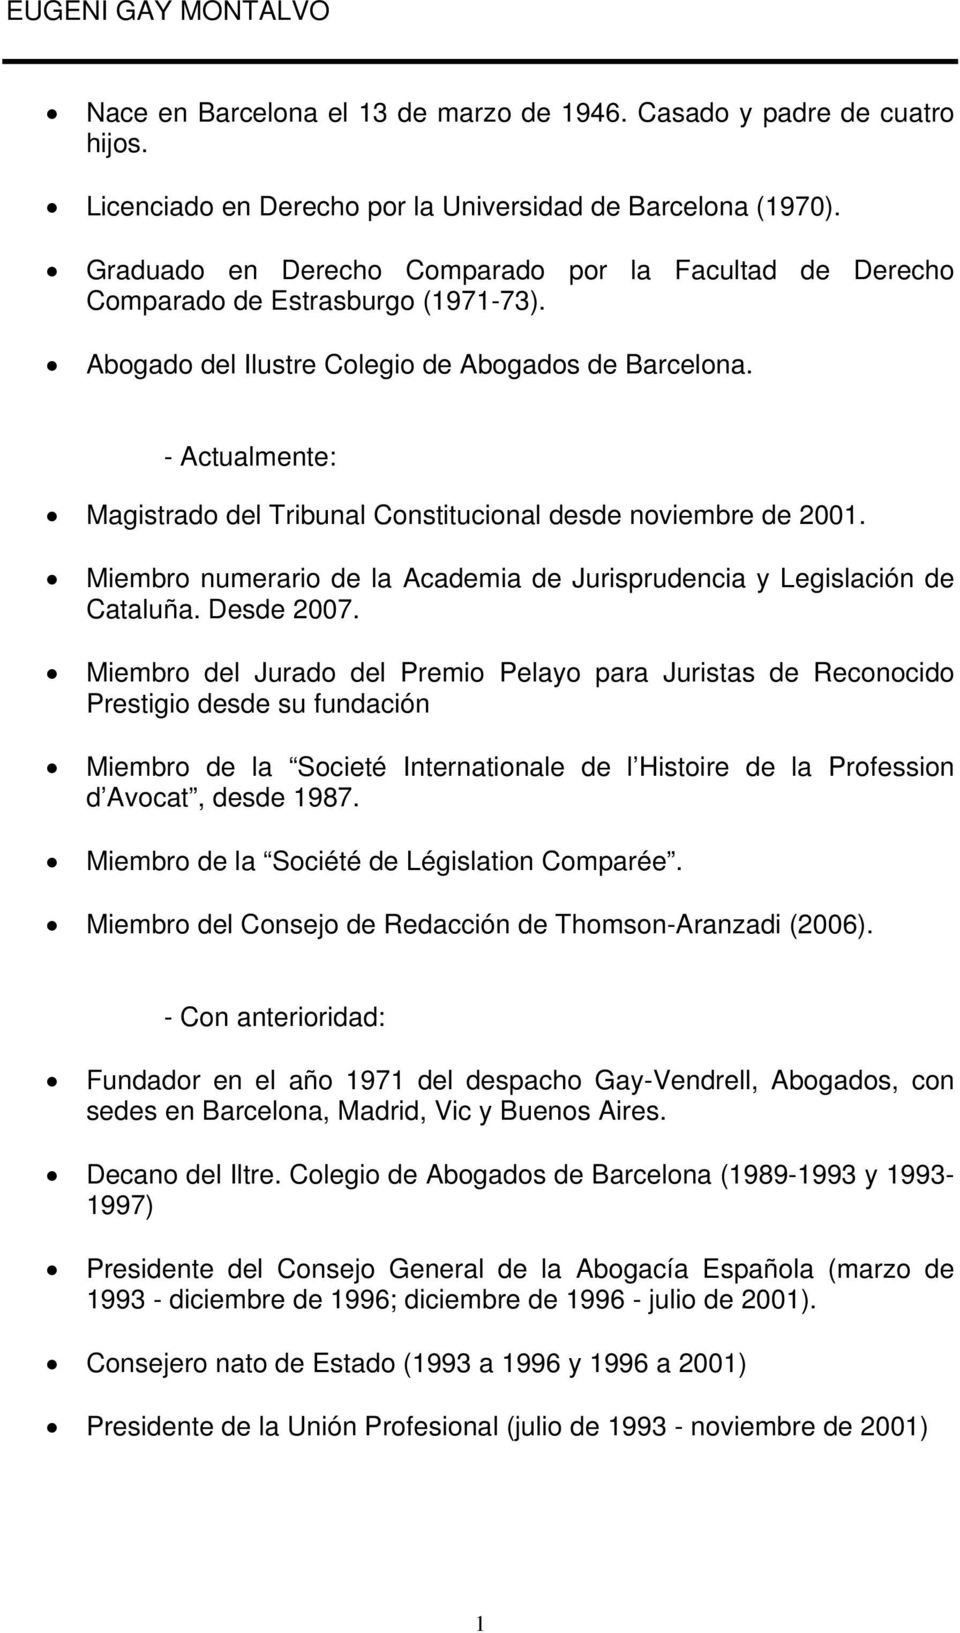 - Actualmente: Magistrado del Tribunal Constitucional desde noviembre de 2001. Miembro numerario de la Academia de Jurisprudencia y Legislación de Cataluña. Desde 2007.